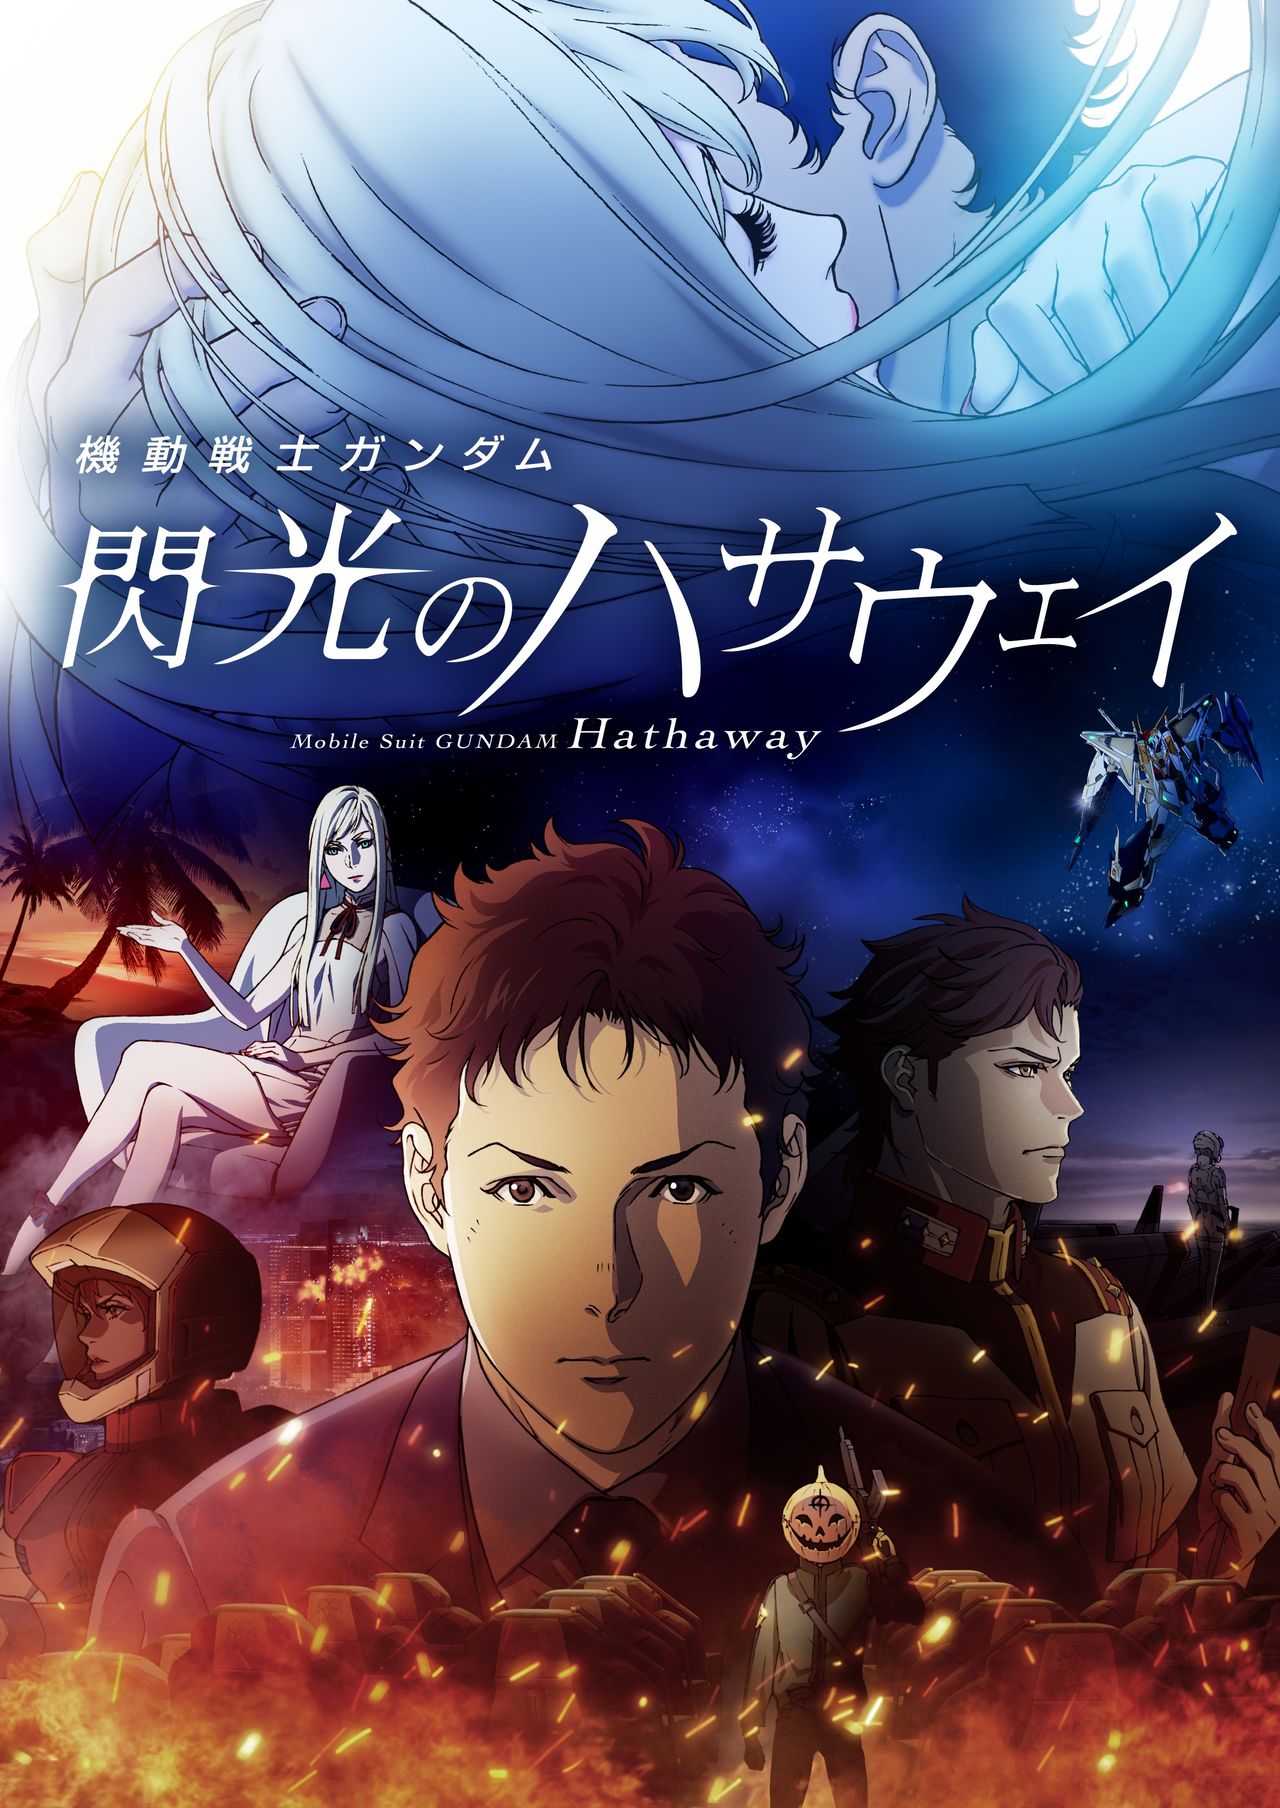 L'affiche de Mobile Suit Gundam : Senkô no Hathaway, sorti le 11 juin 2021. ©Sôtsû/Sunrise